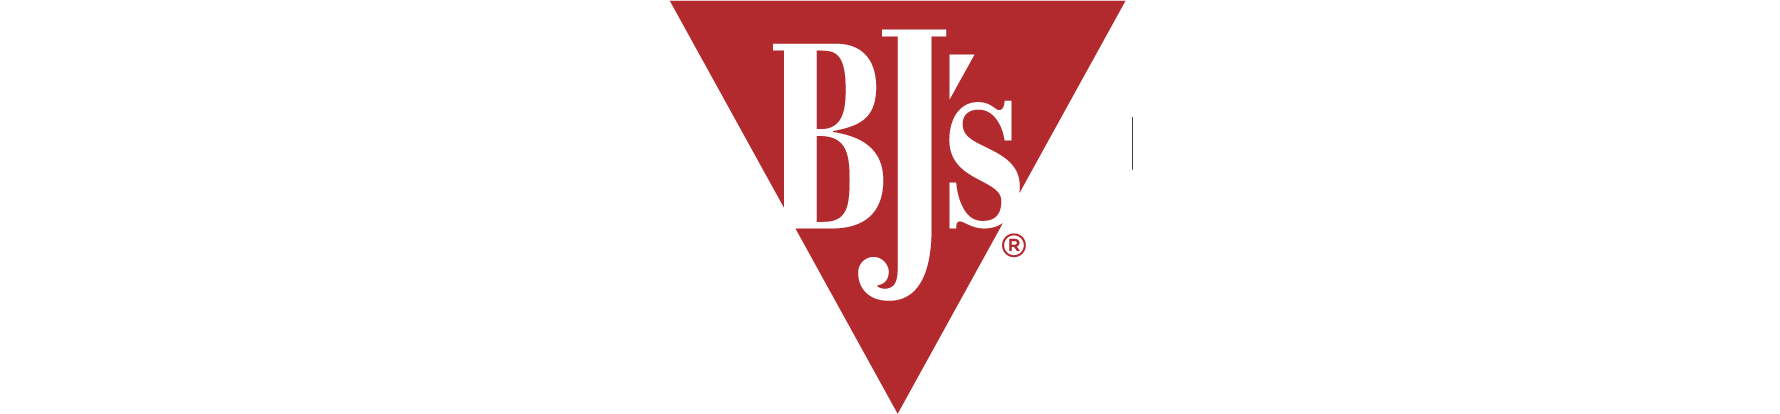 BJ's Restaurants Inc logo